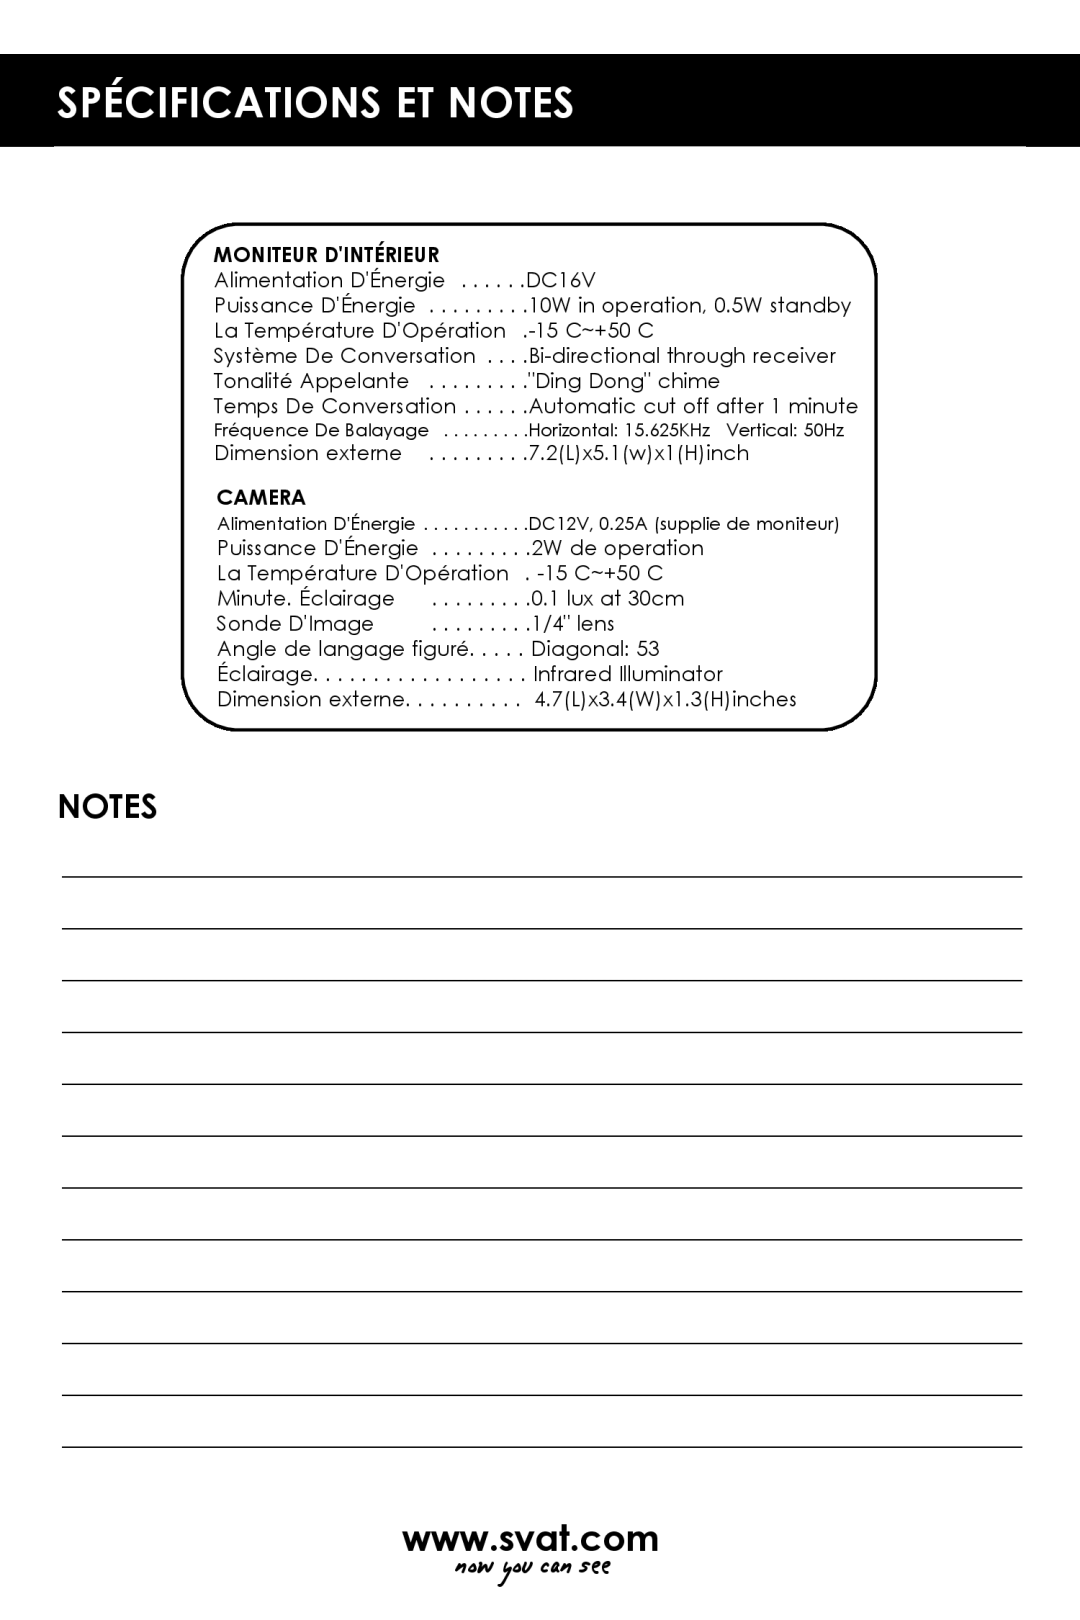 SVAT Electronics VISS7500 user manual Spécifications Et Notes, Moniteur Dintérieur, Camera 